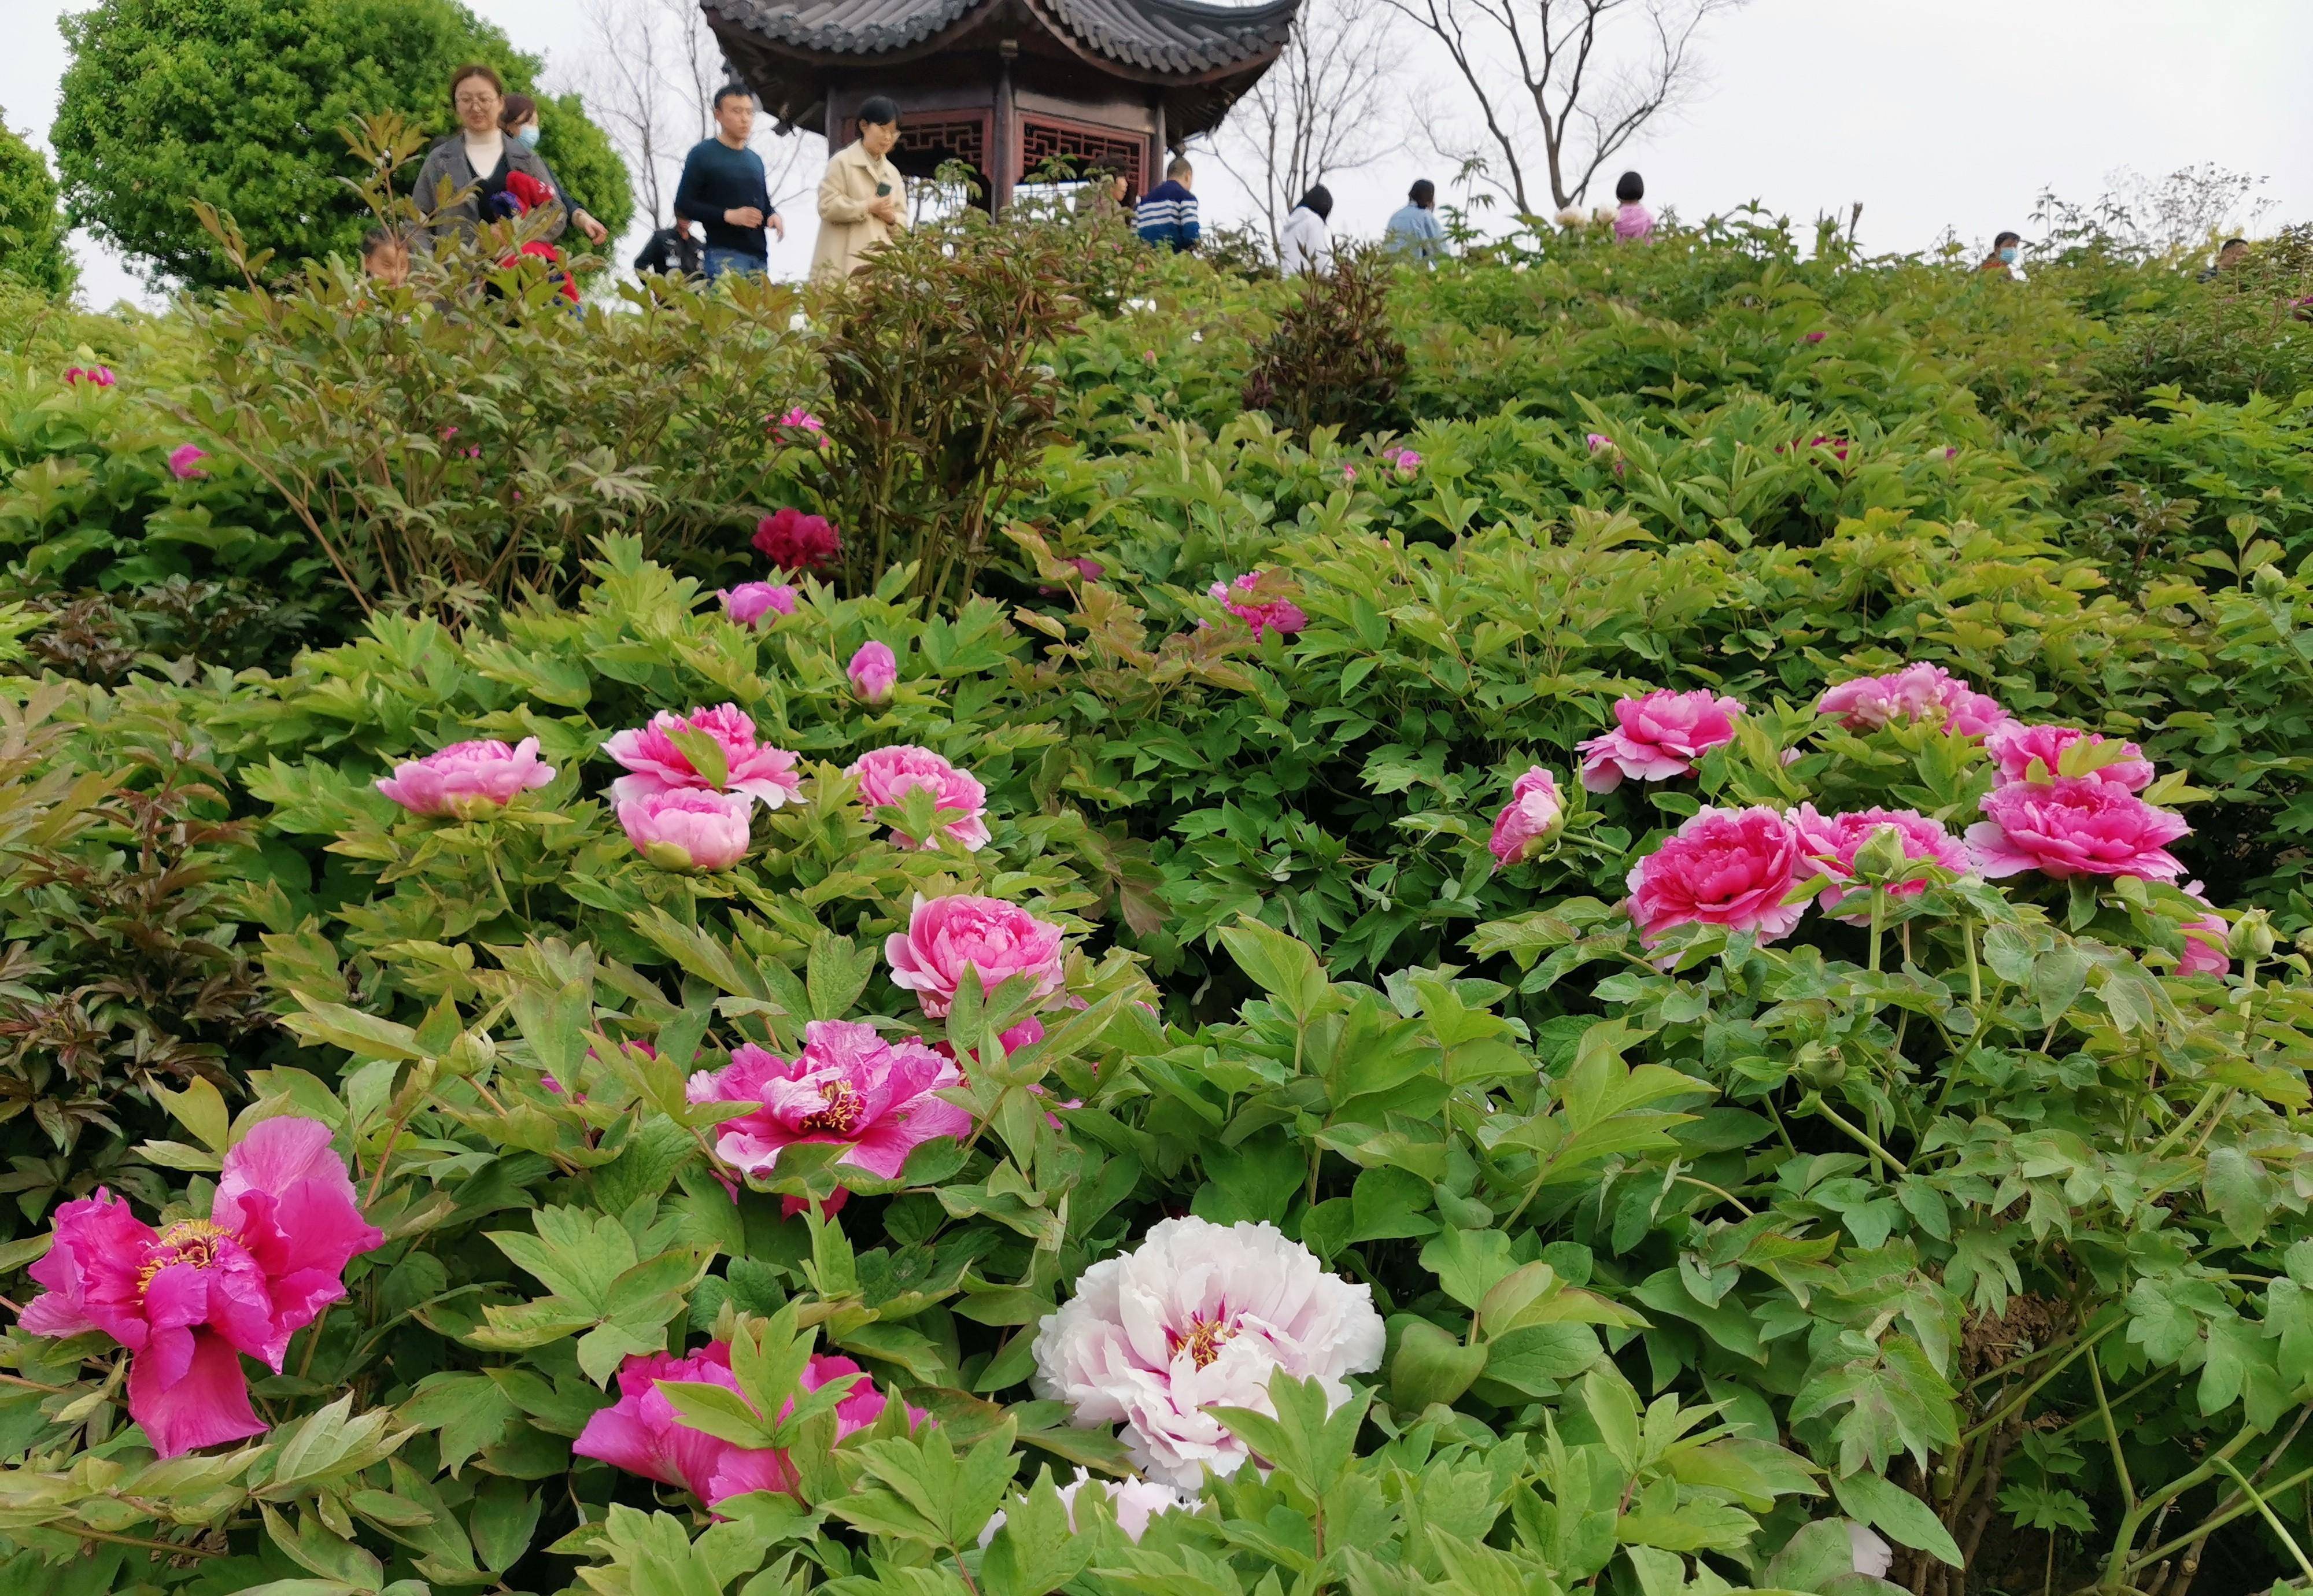 听说凤凰苑植物园里的郁金香很漂亮,我们去看看吧!